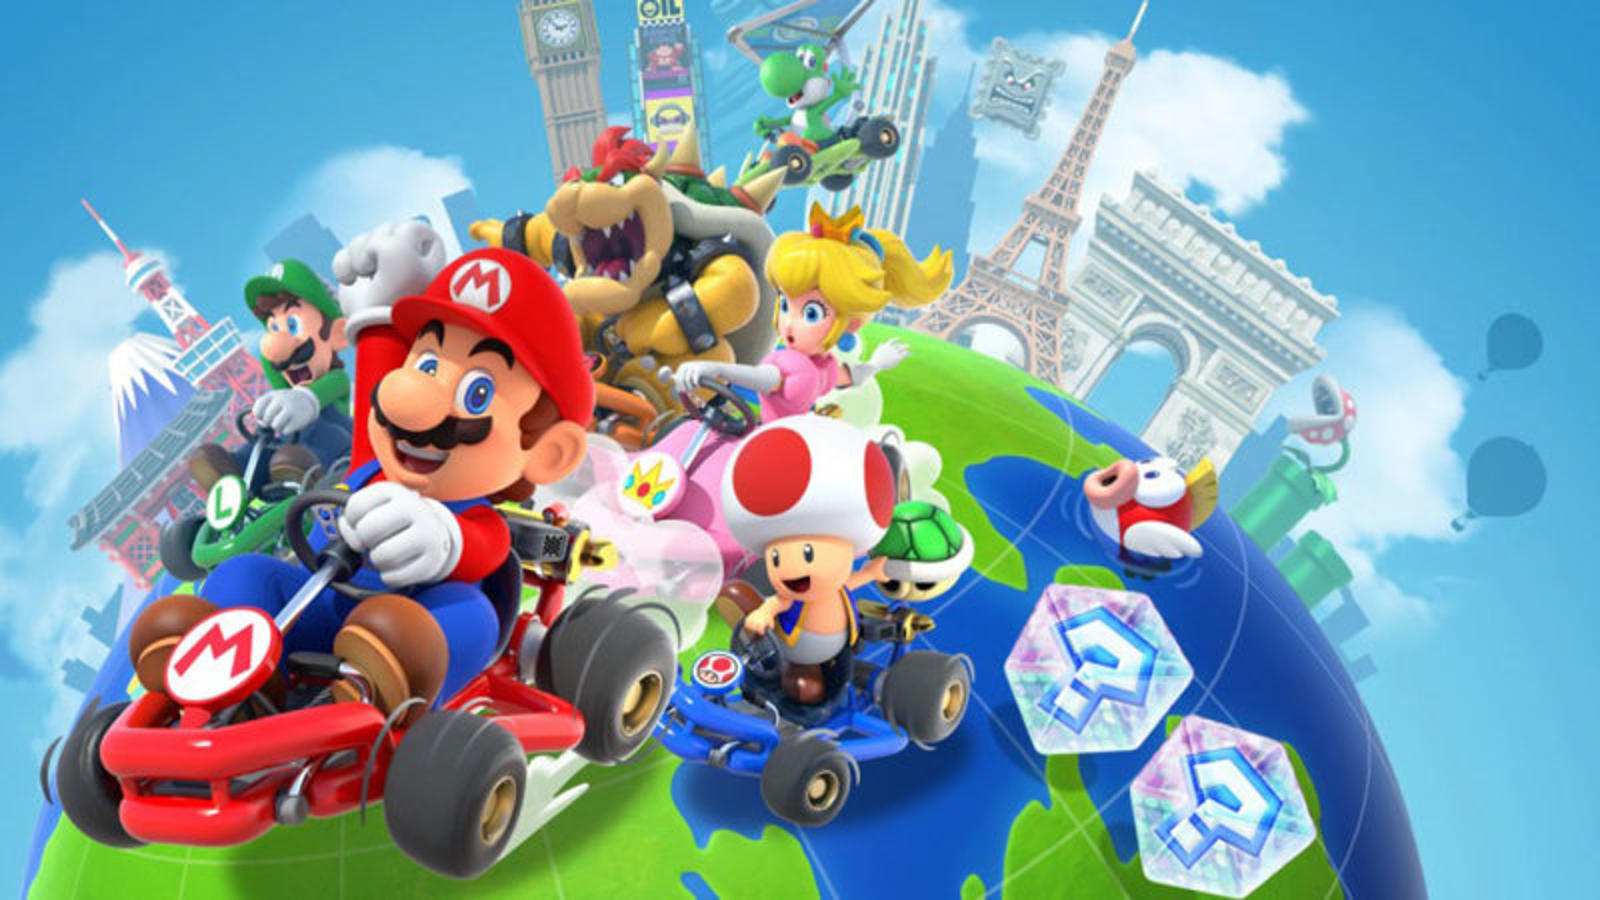 Mario Kart Tour' will be Free-to-Start like 'Super Mario Run